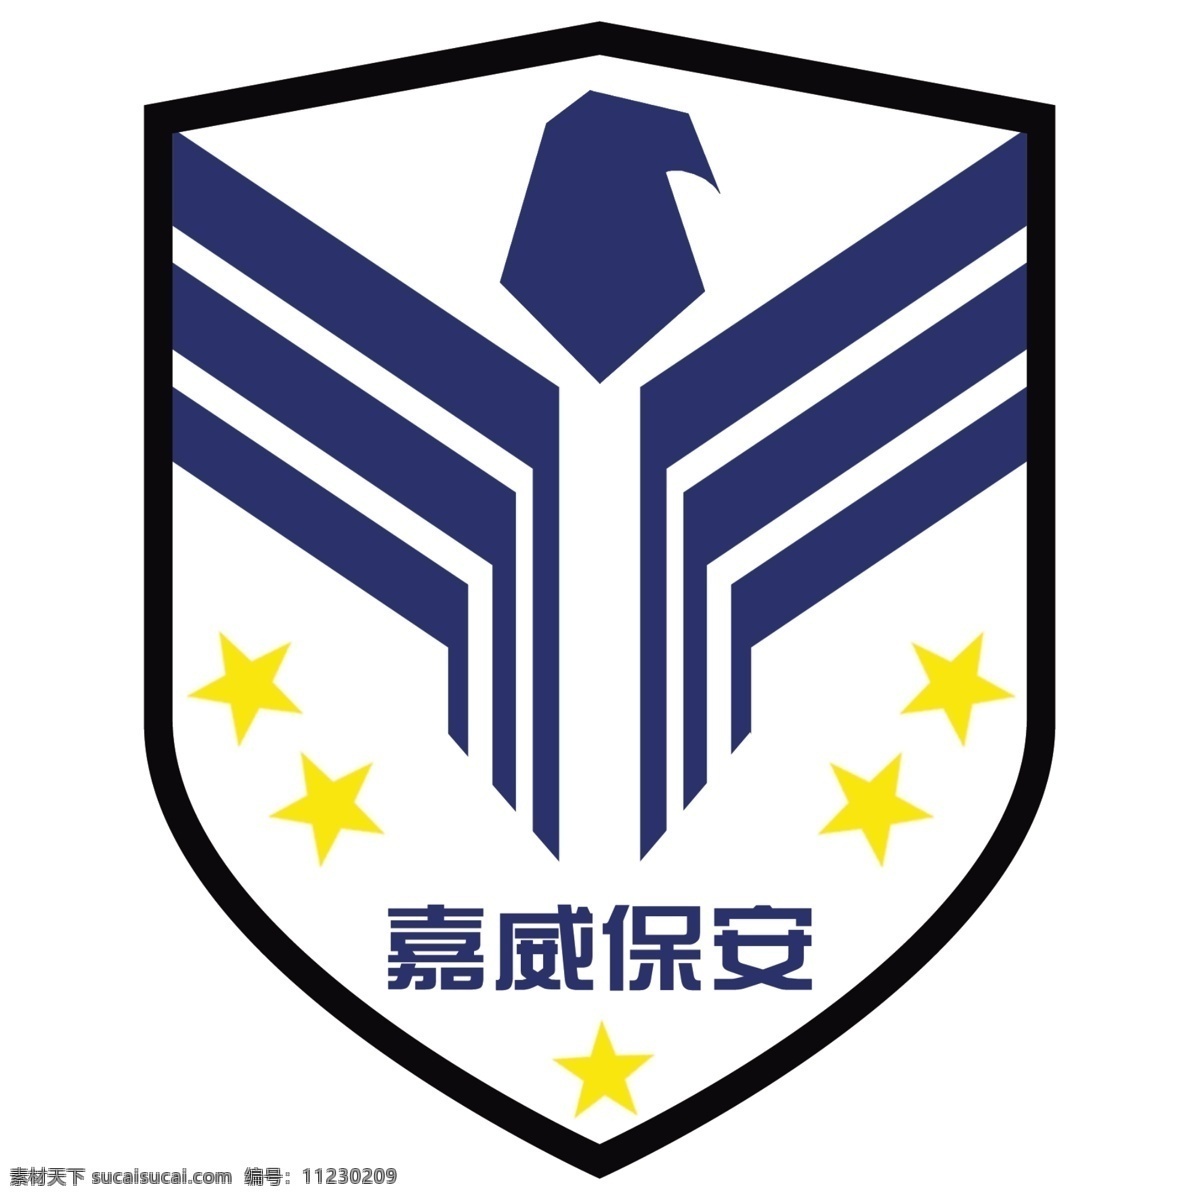 保安logo 保安 保全 logo 标志 白色